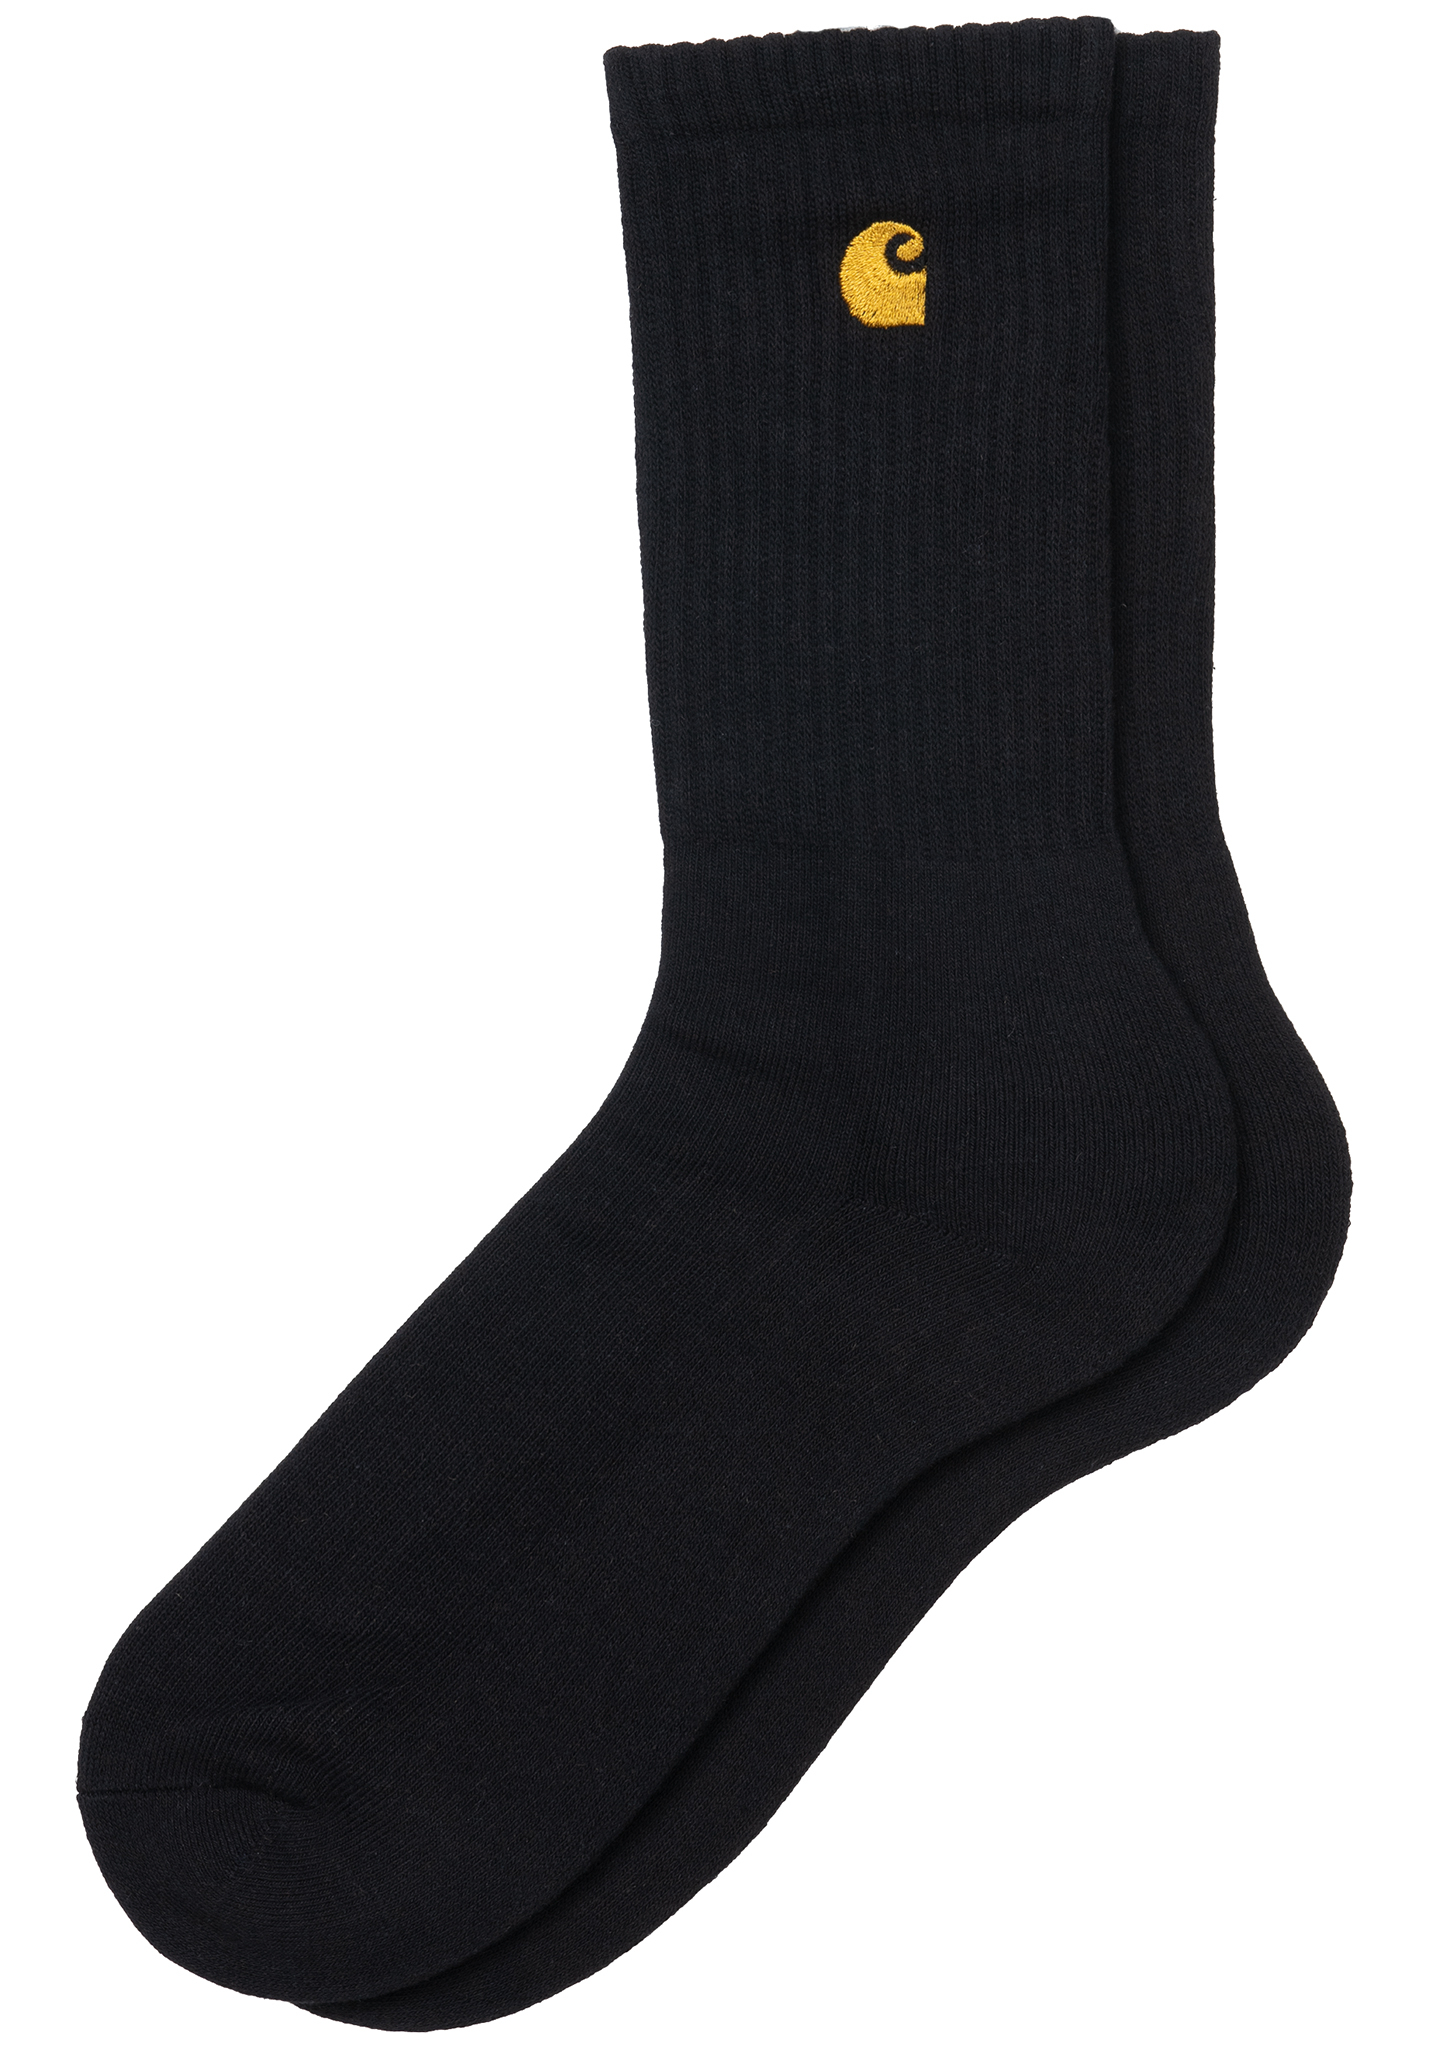 Carhartt WIP Chase Socken schwarz / gold One Size